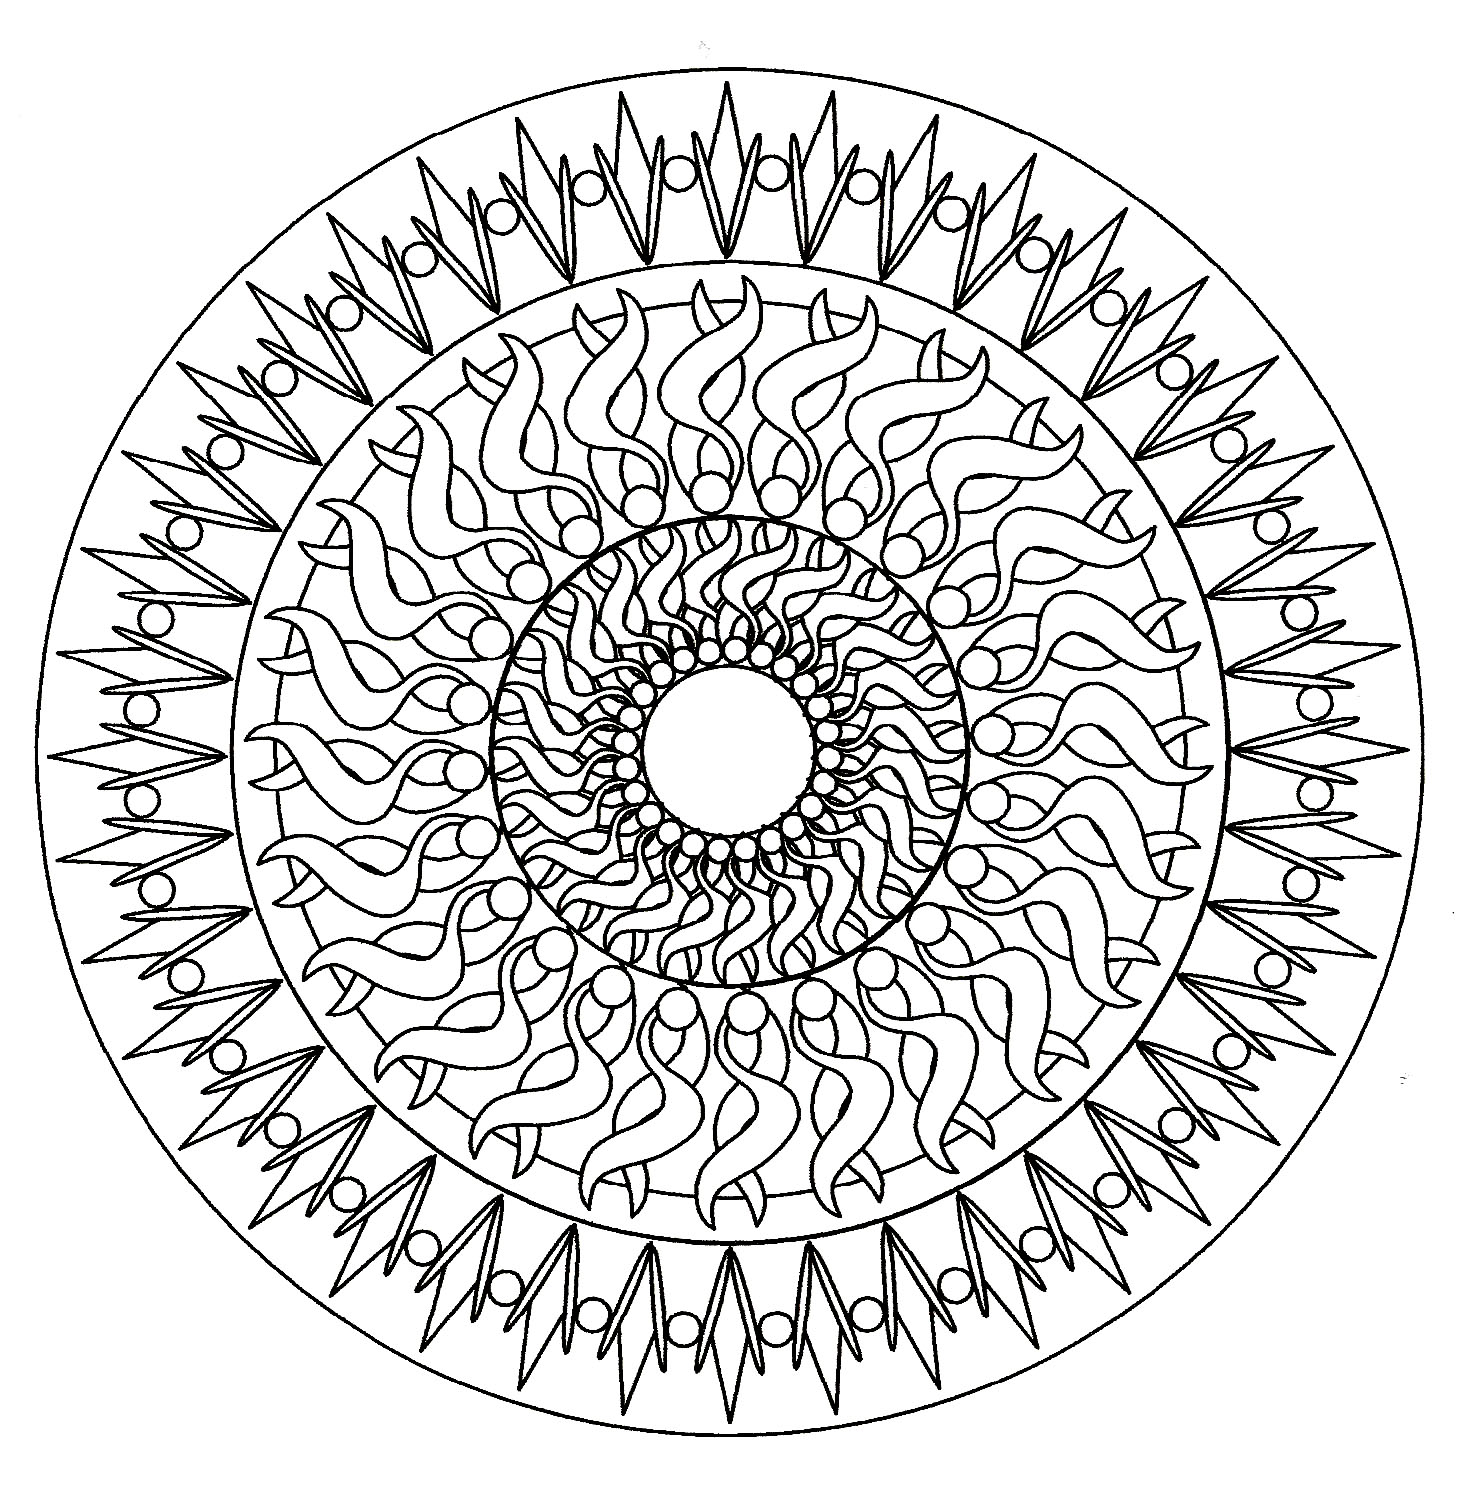 Un Mandala hypnotique de difficulté 'normale', qui conviendra aux enfants et aux adultes qui souhaitent des coloriages ni trop simples ni trop difficiles.